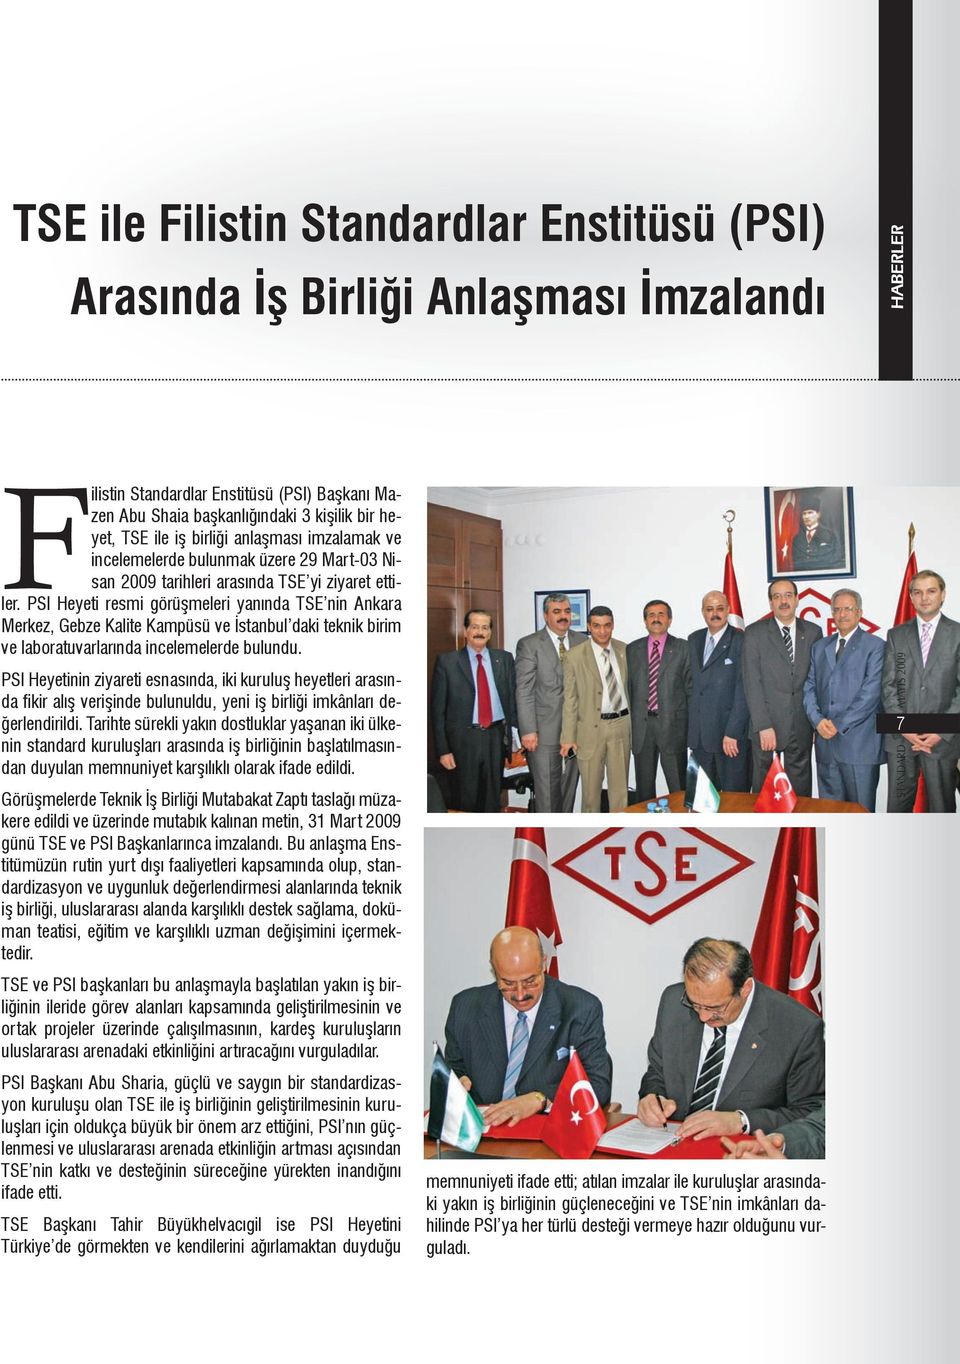 PSI Heyeti resmi görüşmeleri yanında TSE nin Ankara Merkez, Gebze Kalite Kampüsü ve İstanbul daki teknik birim ve laboratuvarlarında incelemelerde bulundu.